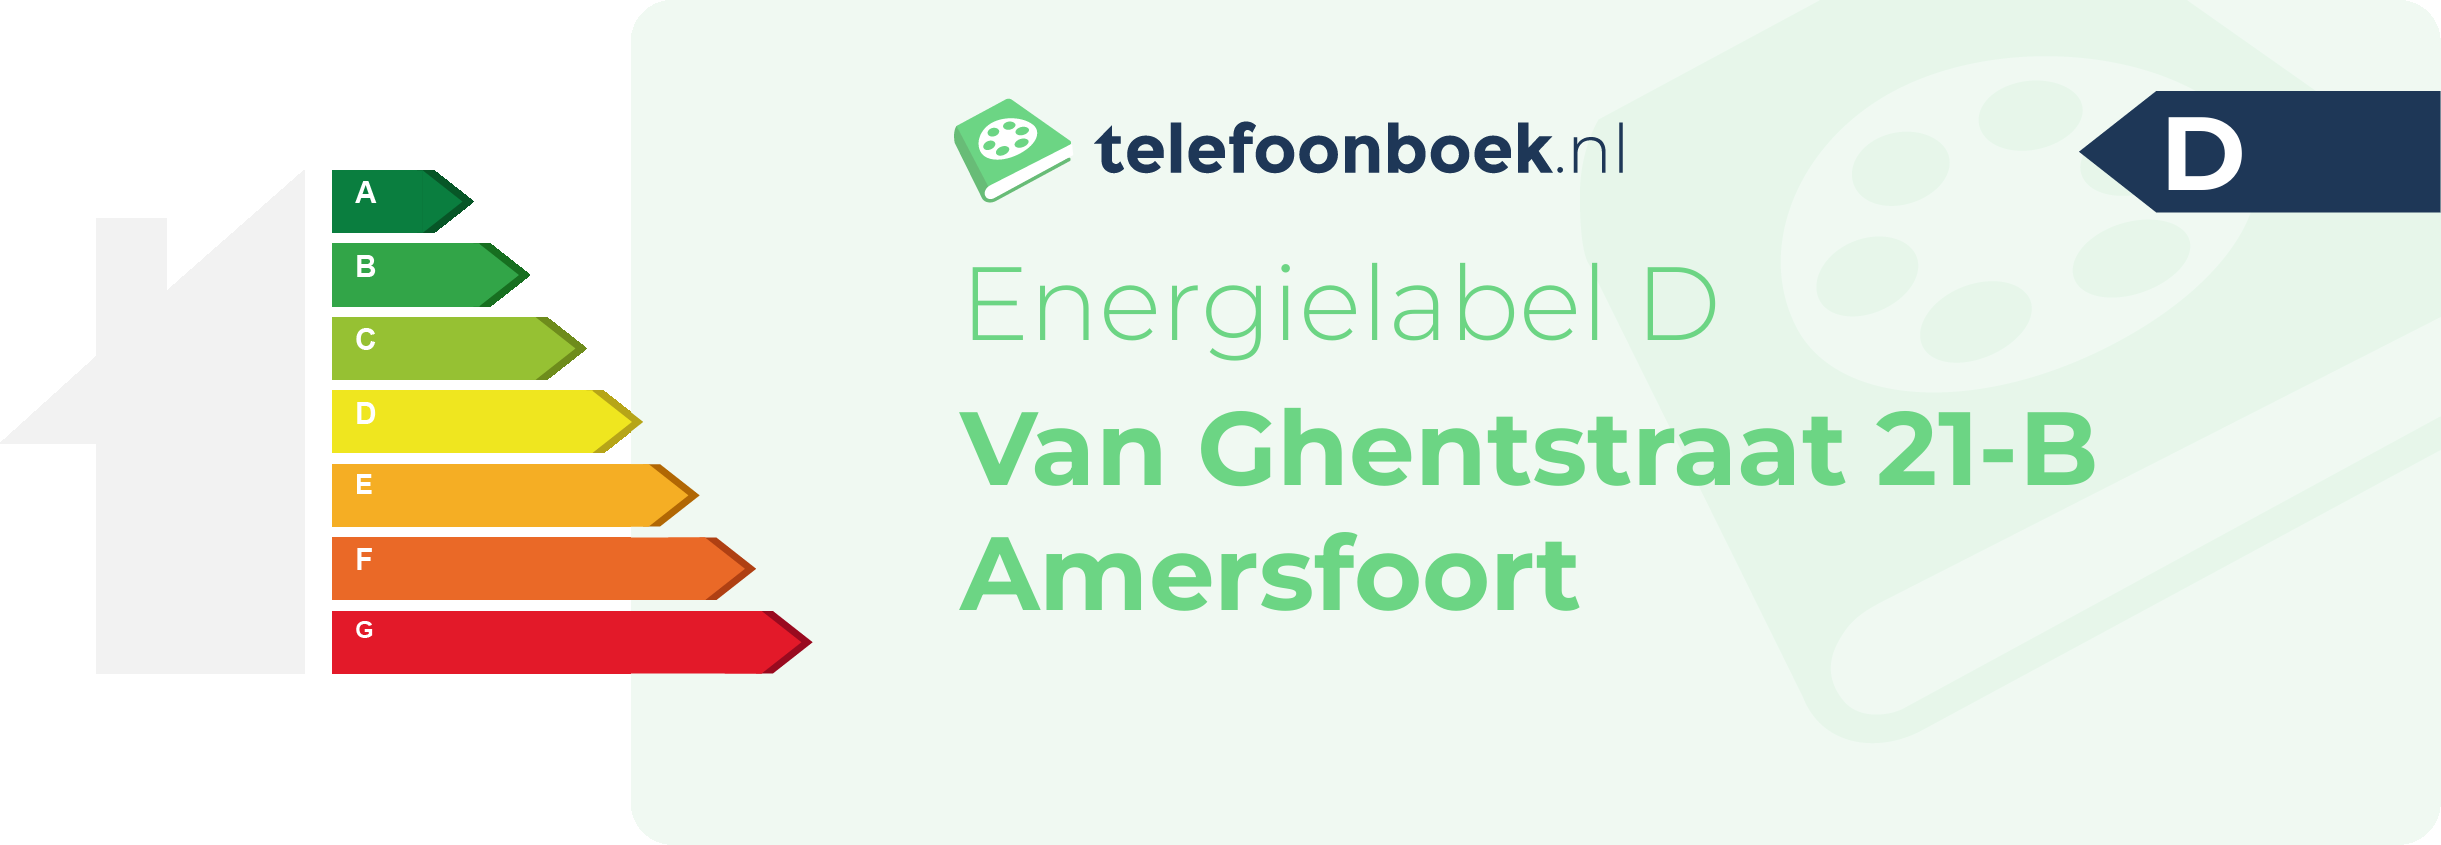 Energielabel Van Ghentstraat 21-B Amersfoort